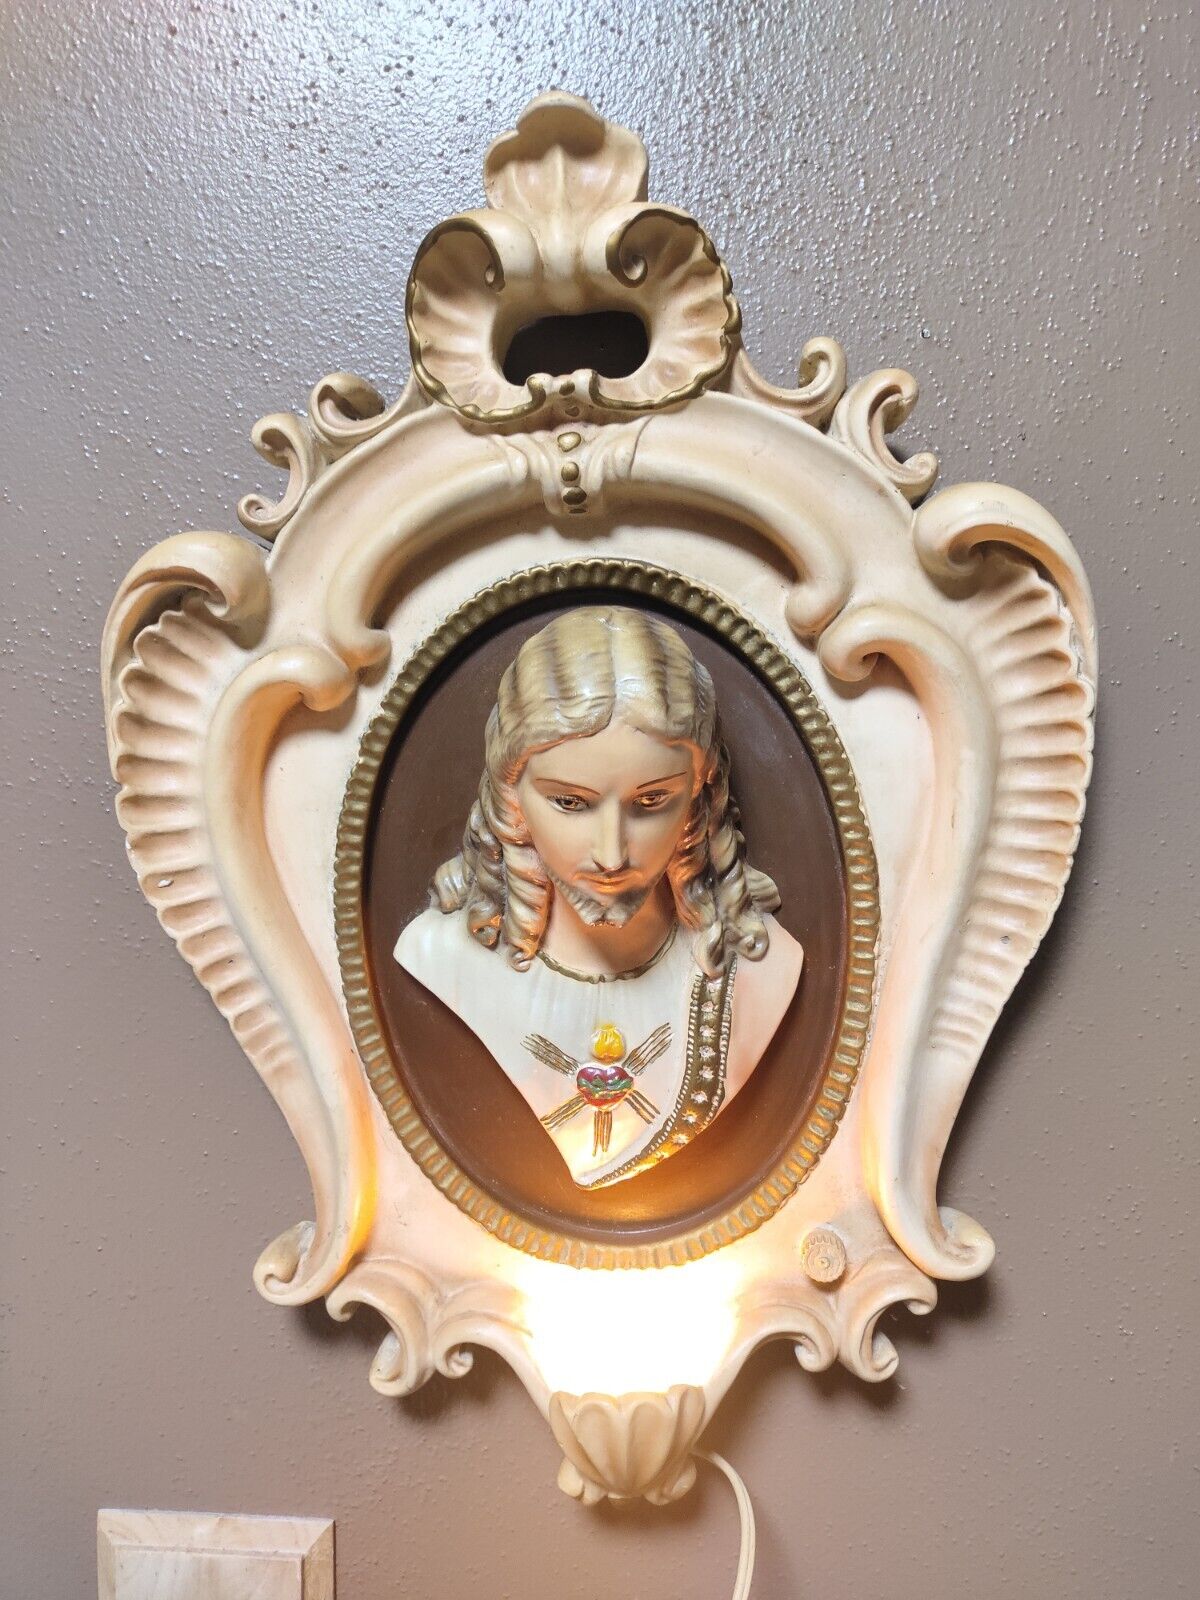 VERY RARE 1959 Religious Jesus Ceramic Hanging Night Light